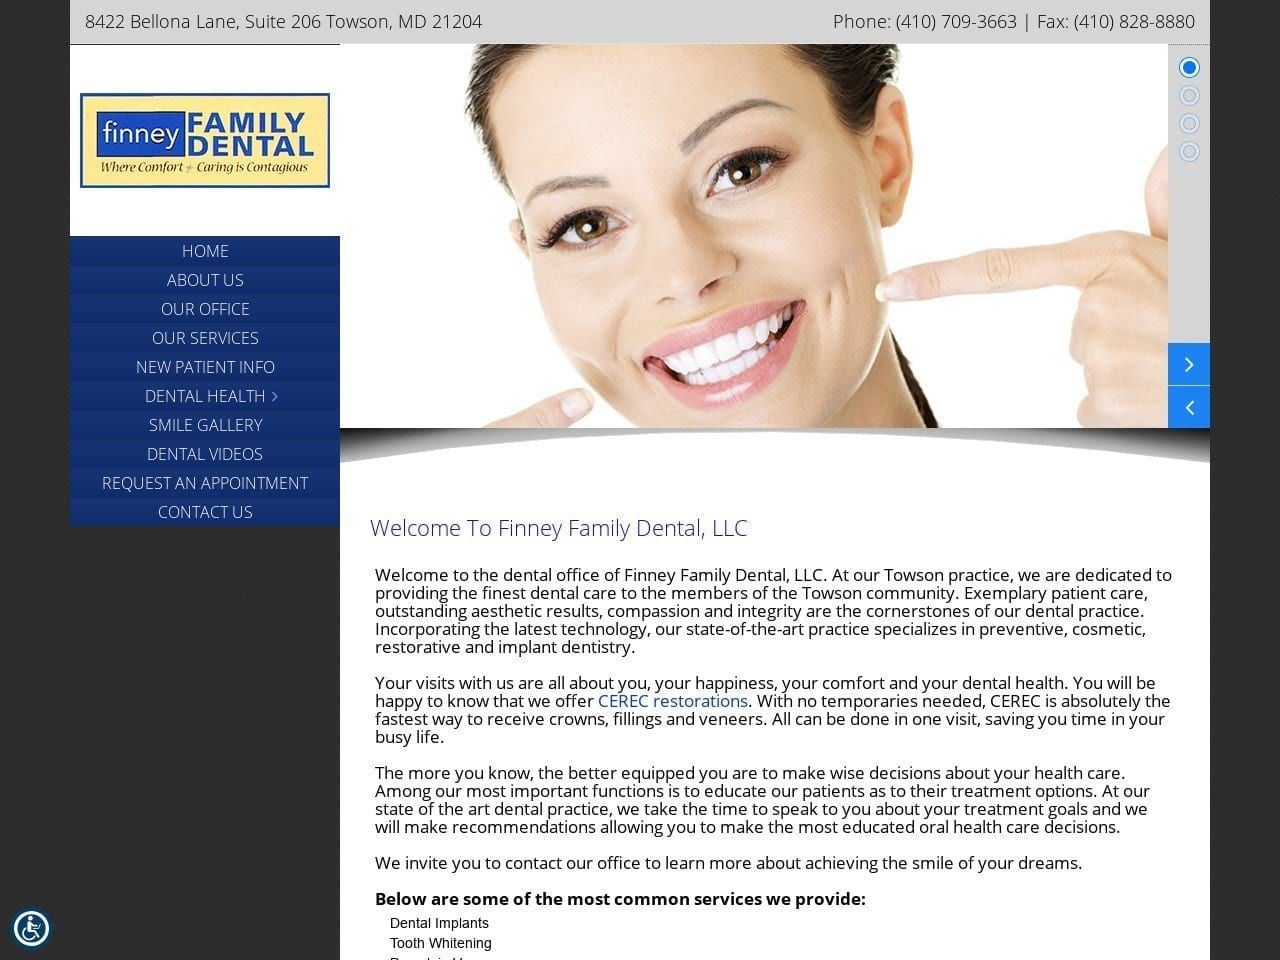 Finney Family Dental LLC James P Finney DDS Website Screenshot from finneyfamilydental.com